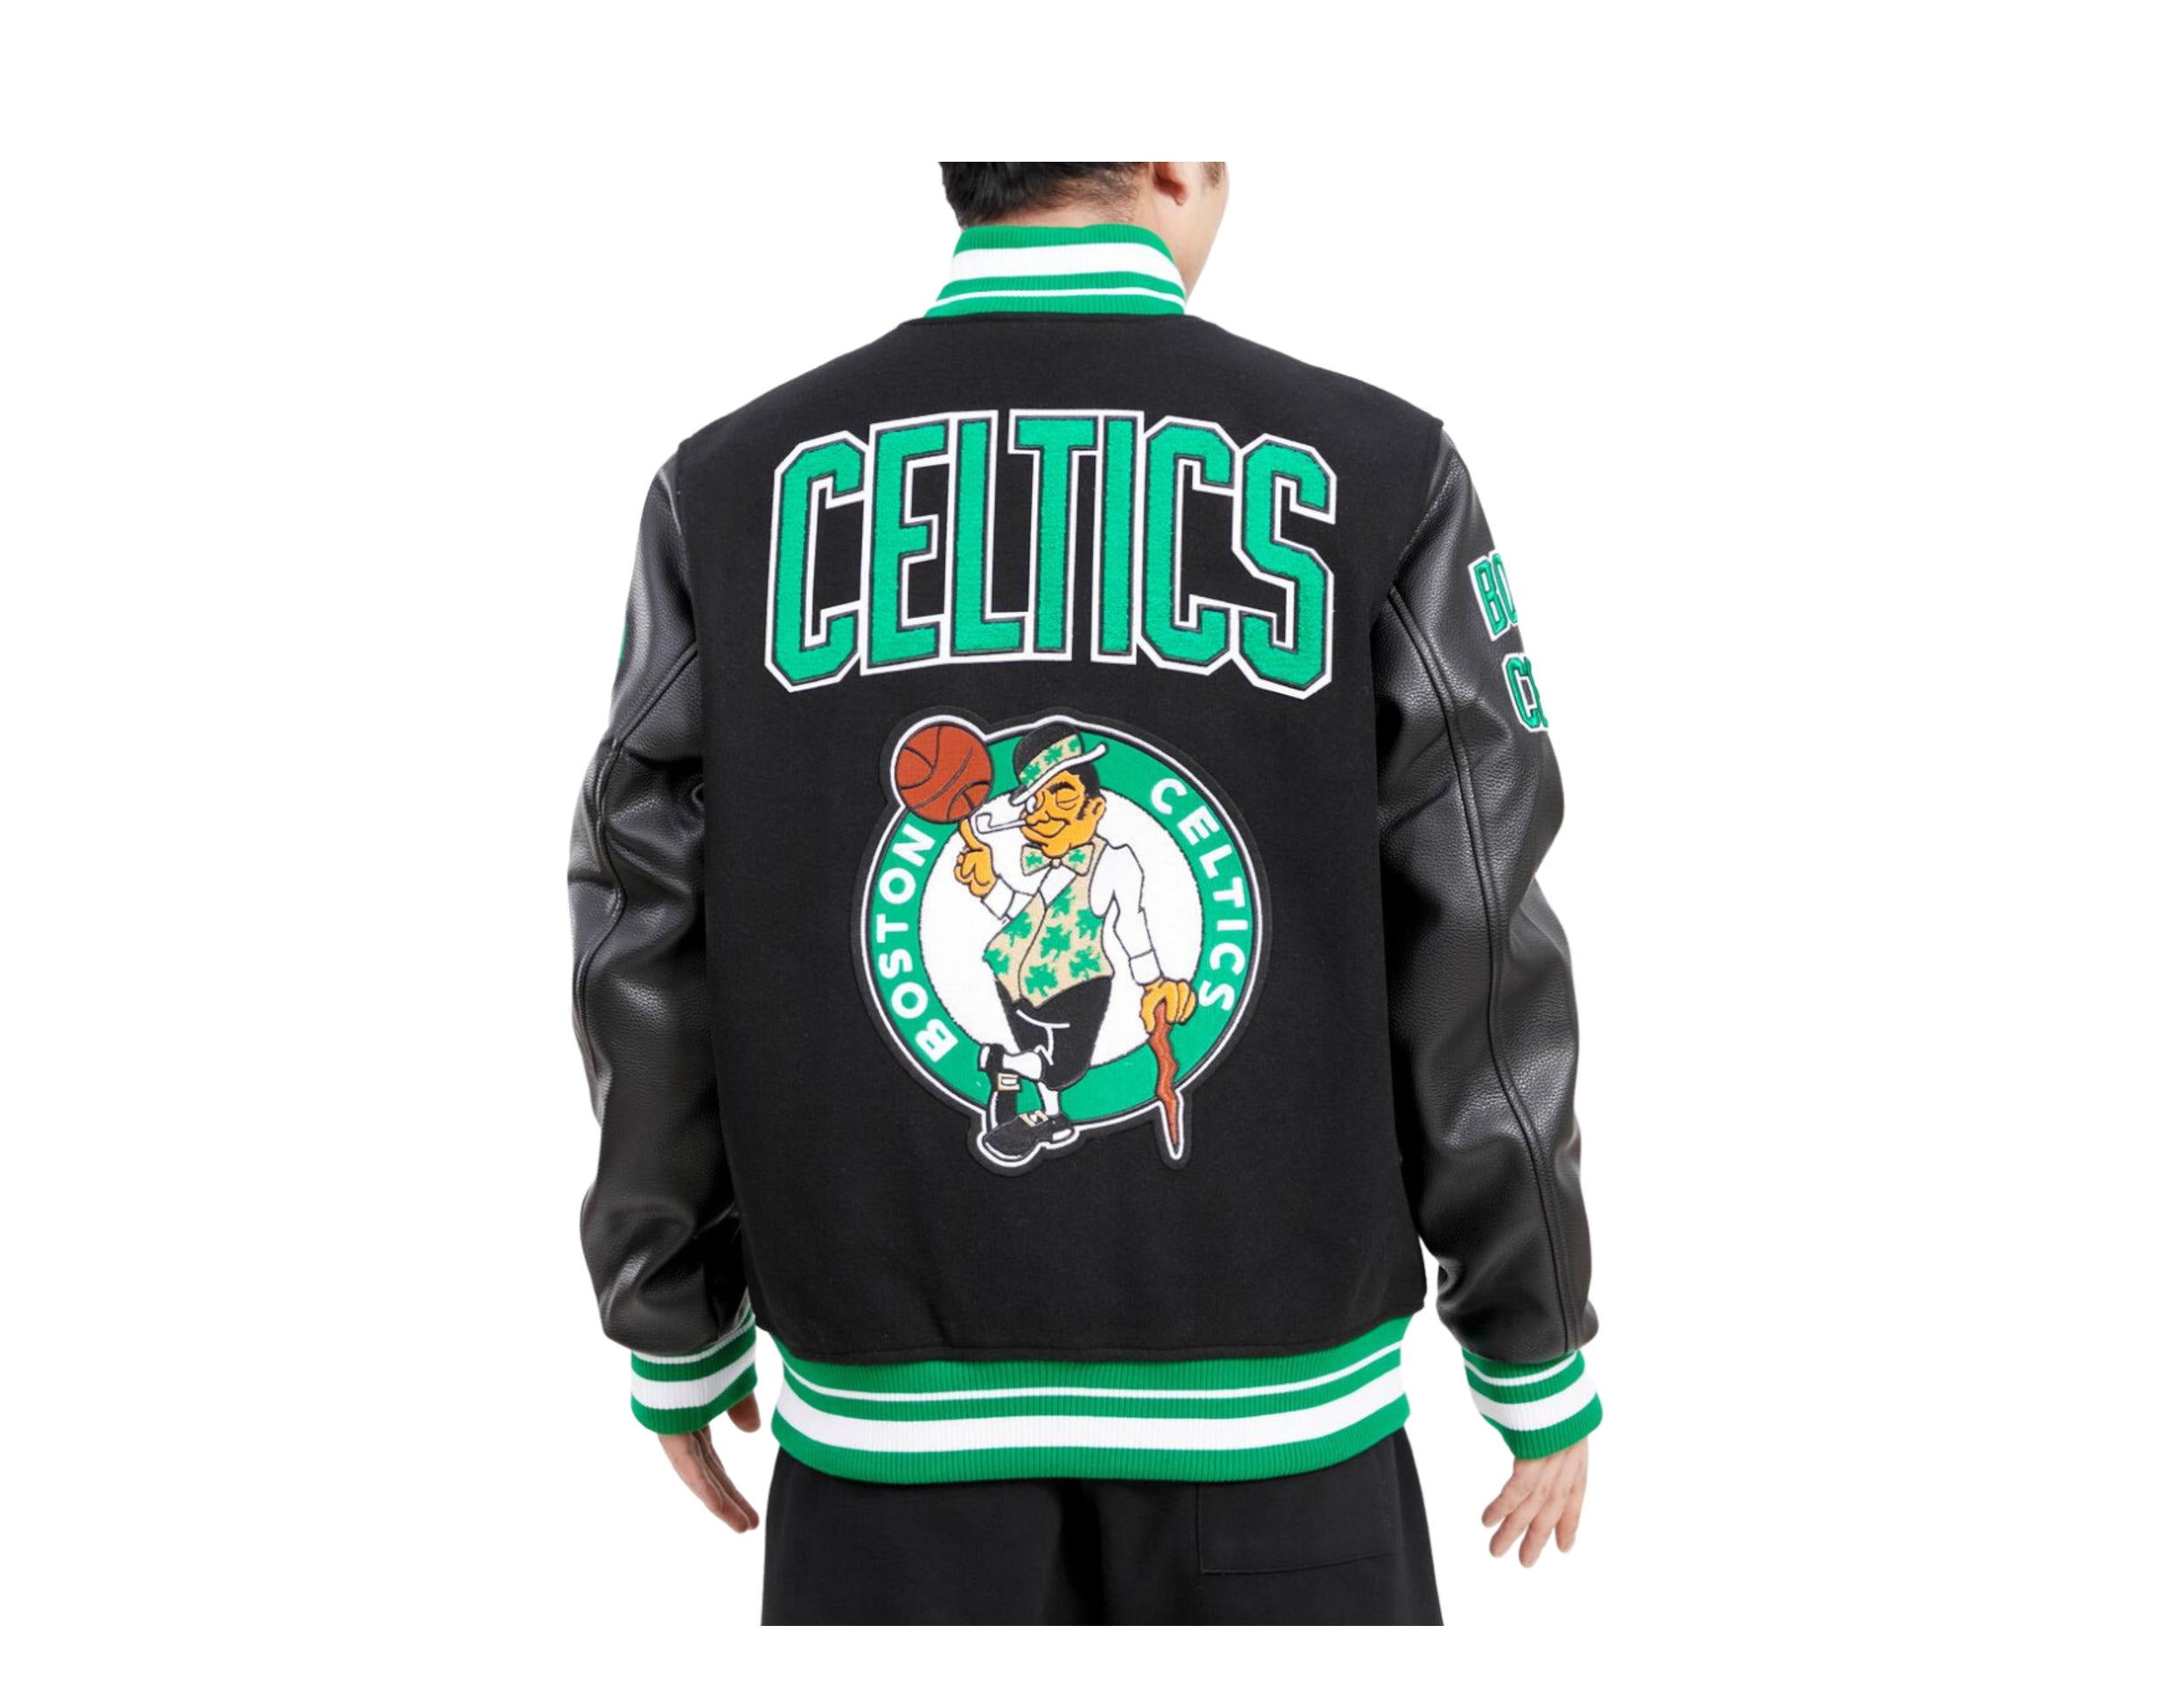 Boston Celtics Jacket Men 2XL Coat Varsity Shamrock NBA Basketball Bomber  Retro